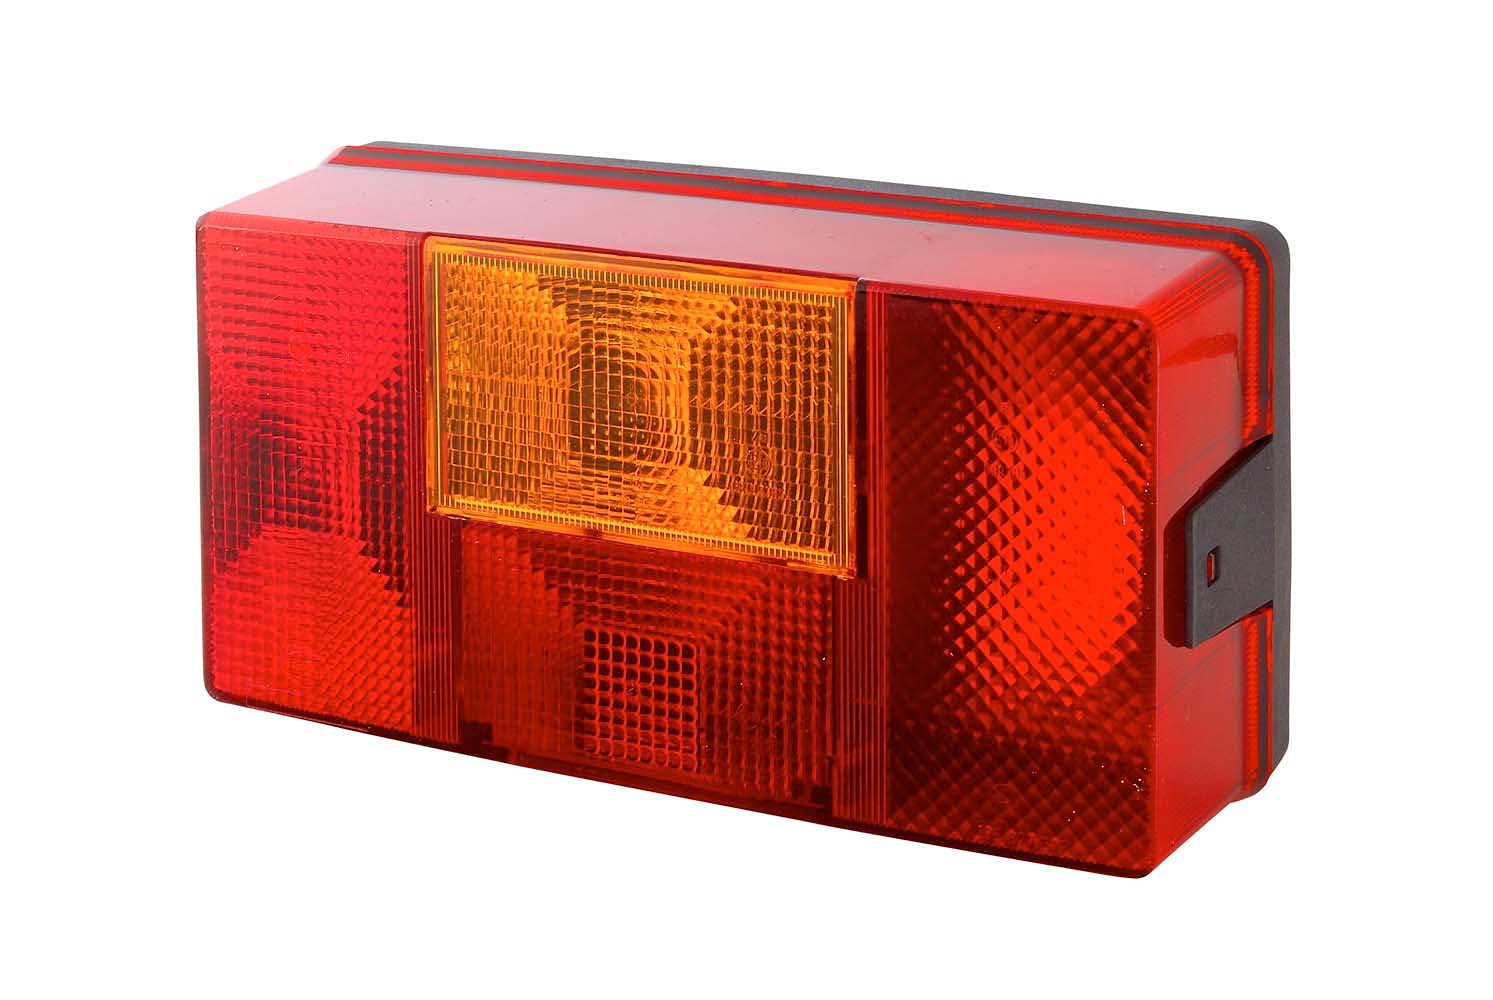 HELLA Rückleuchte - Glühlampe - Anhänger Beleuchtung - 24V / 12V - Anbau - ECE - Lichtscheibenfarbe: rot/gelb - Stecker: Flachstecker - rechts - Menge: 1 - 2SD 006 040-141 von Hella